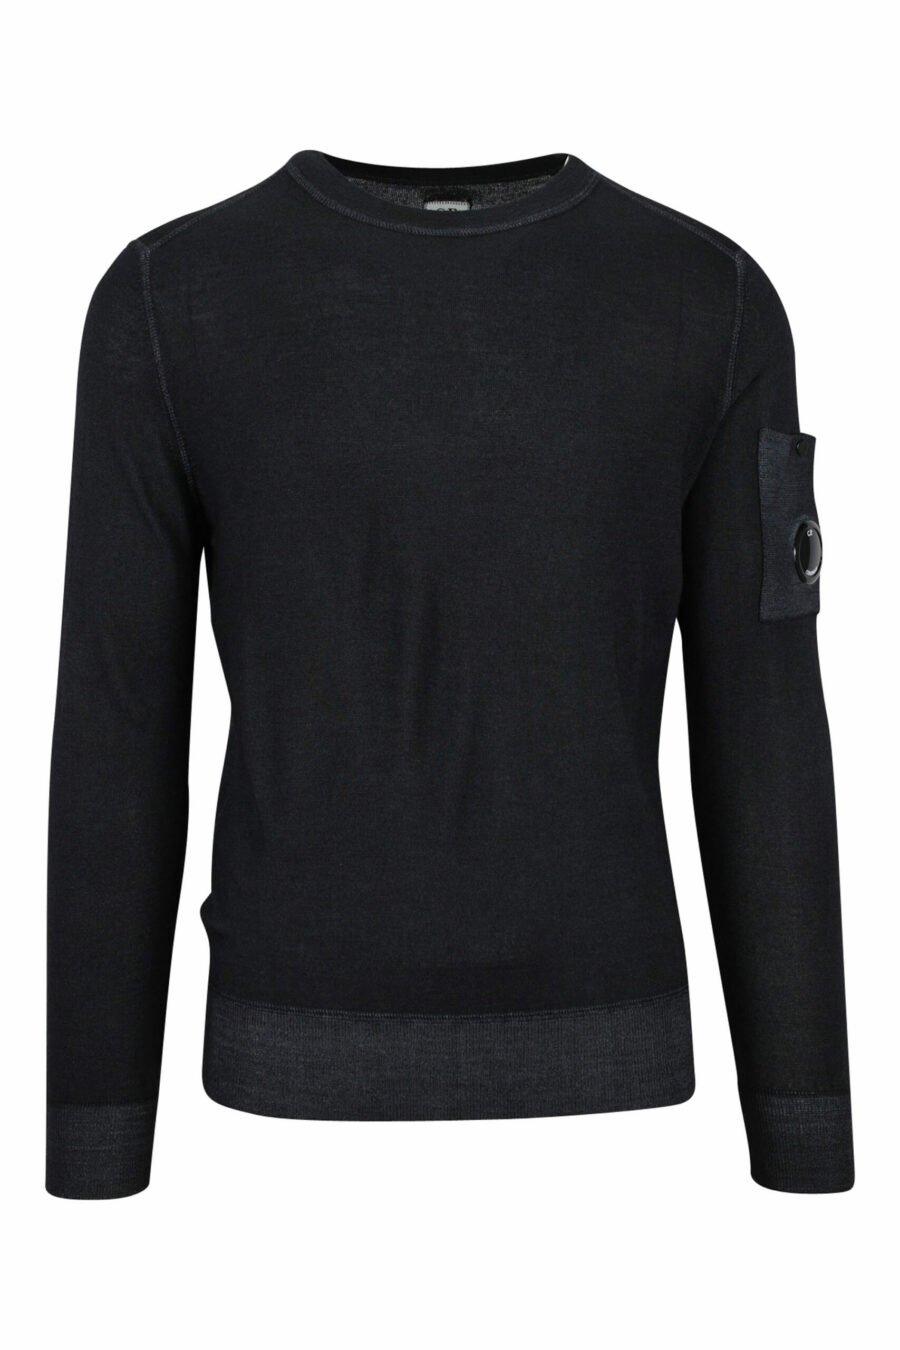 Schwarzes Sweatshirt mit seitlichem Linsenlogo - 7620943583458 skaliert